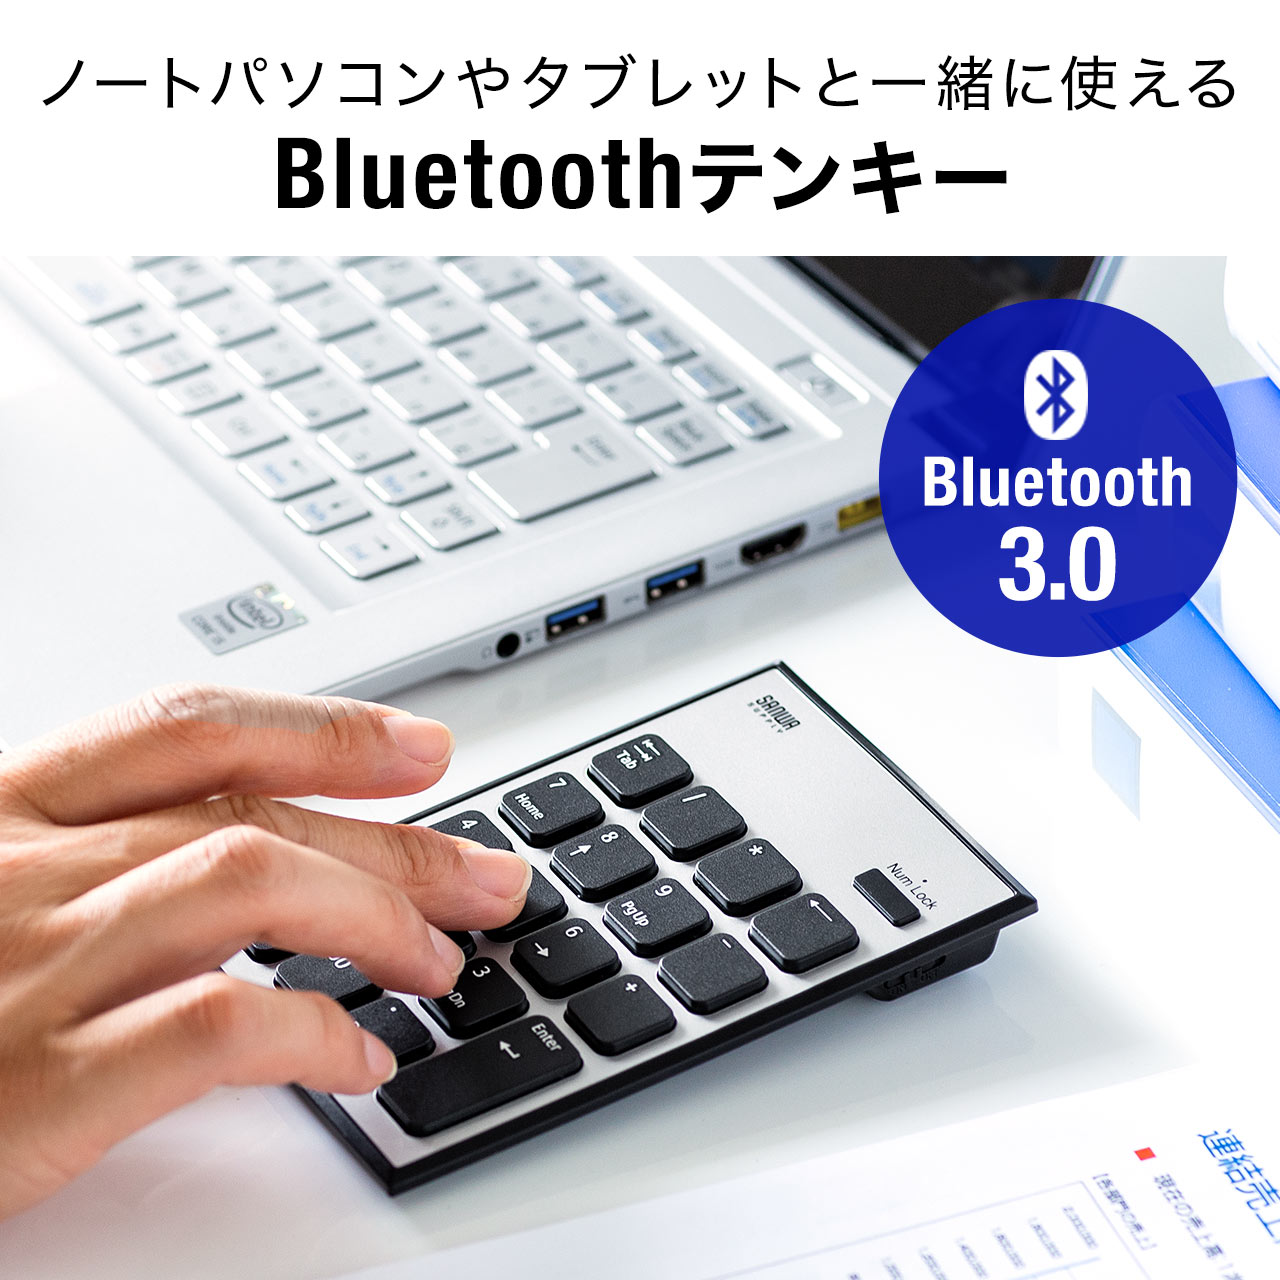 Bluetoothテンキー 無線 薄型 パンタグラフ アイソレーションキー 電池式 400-NT003